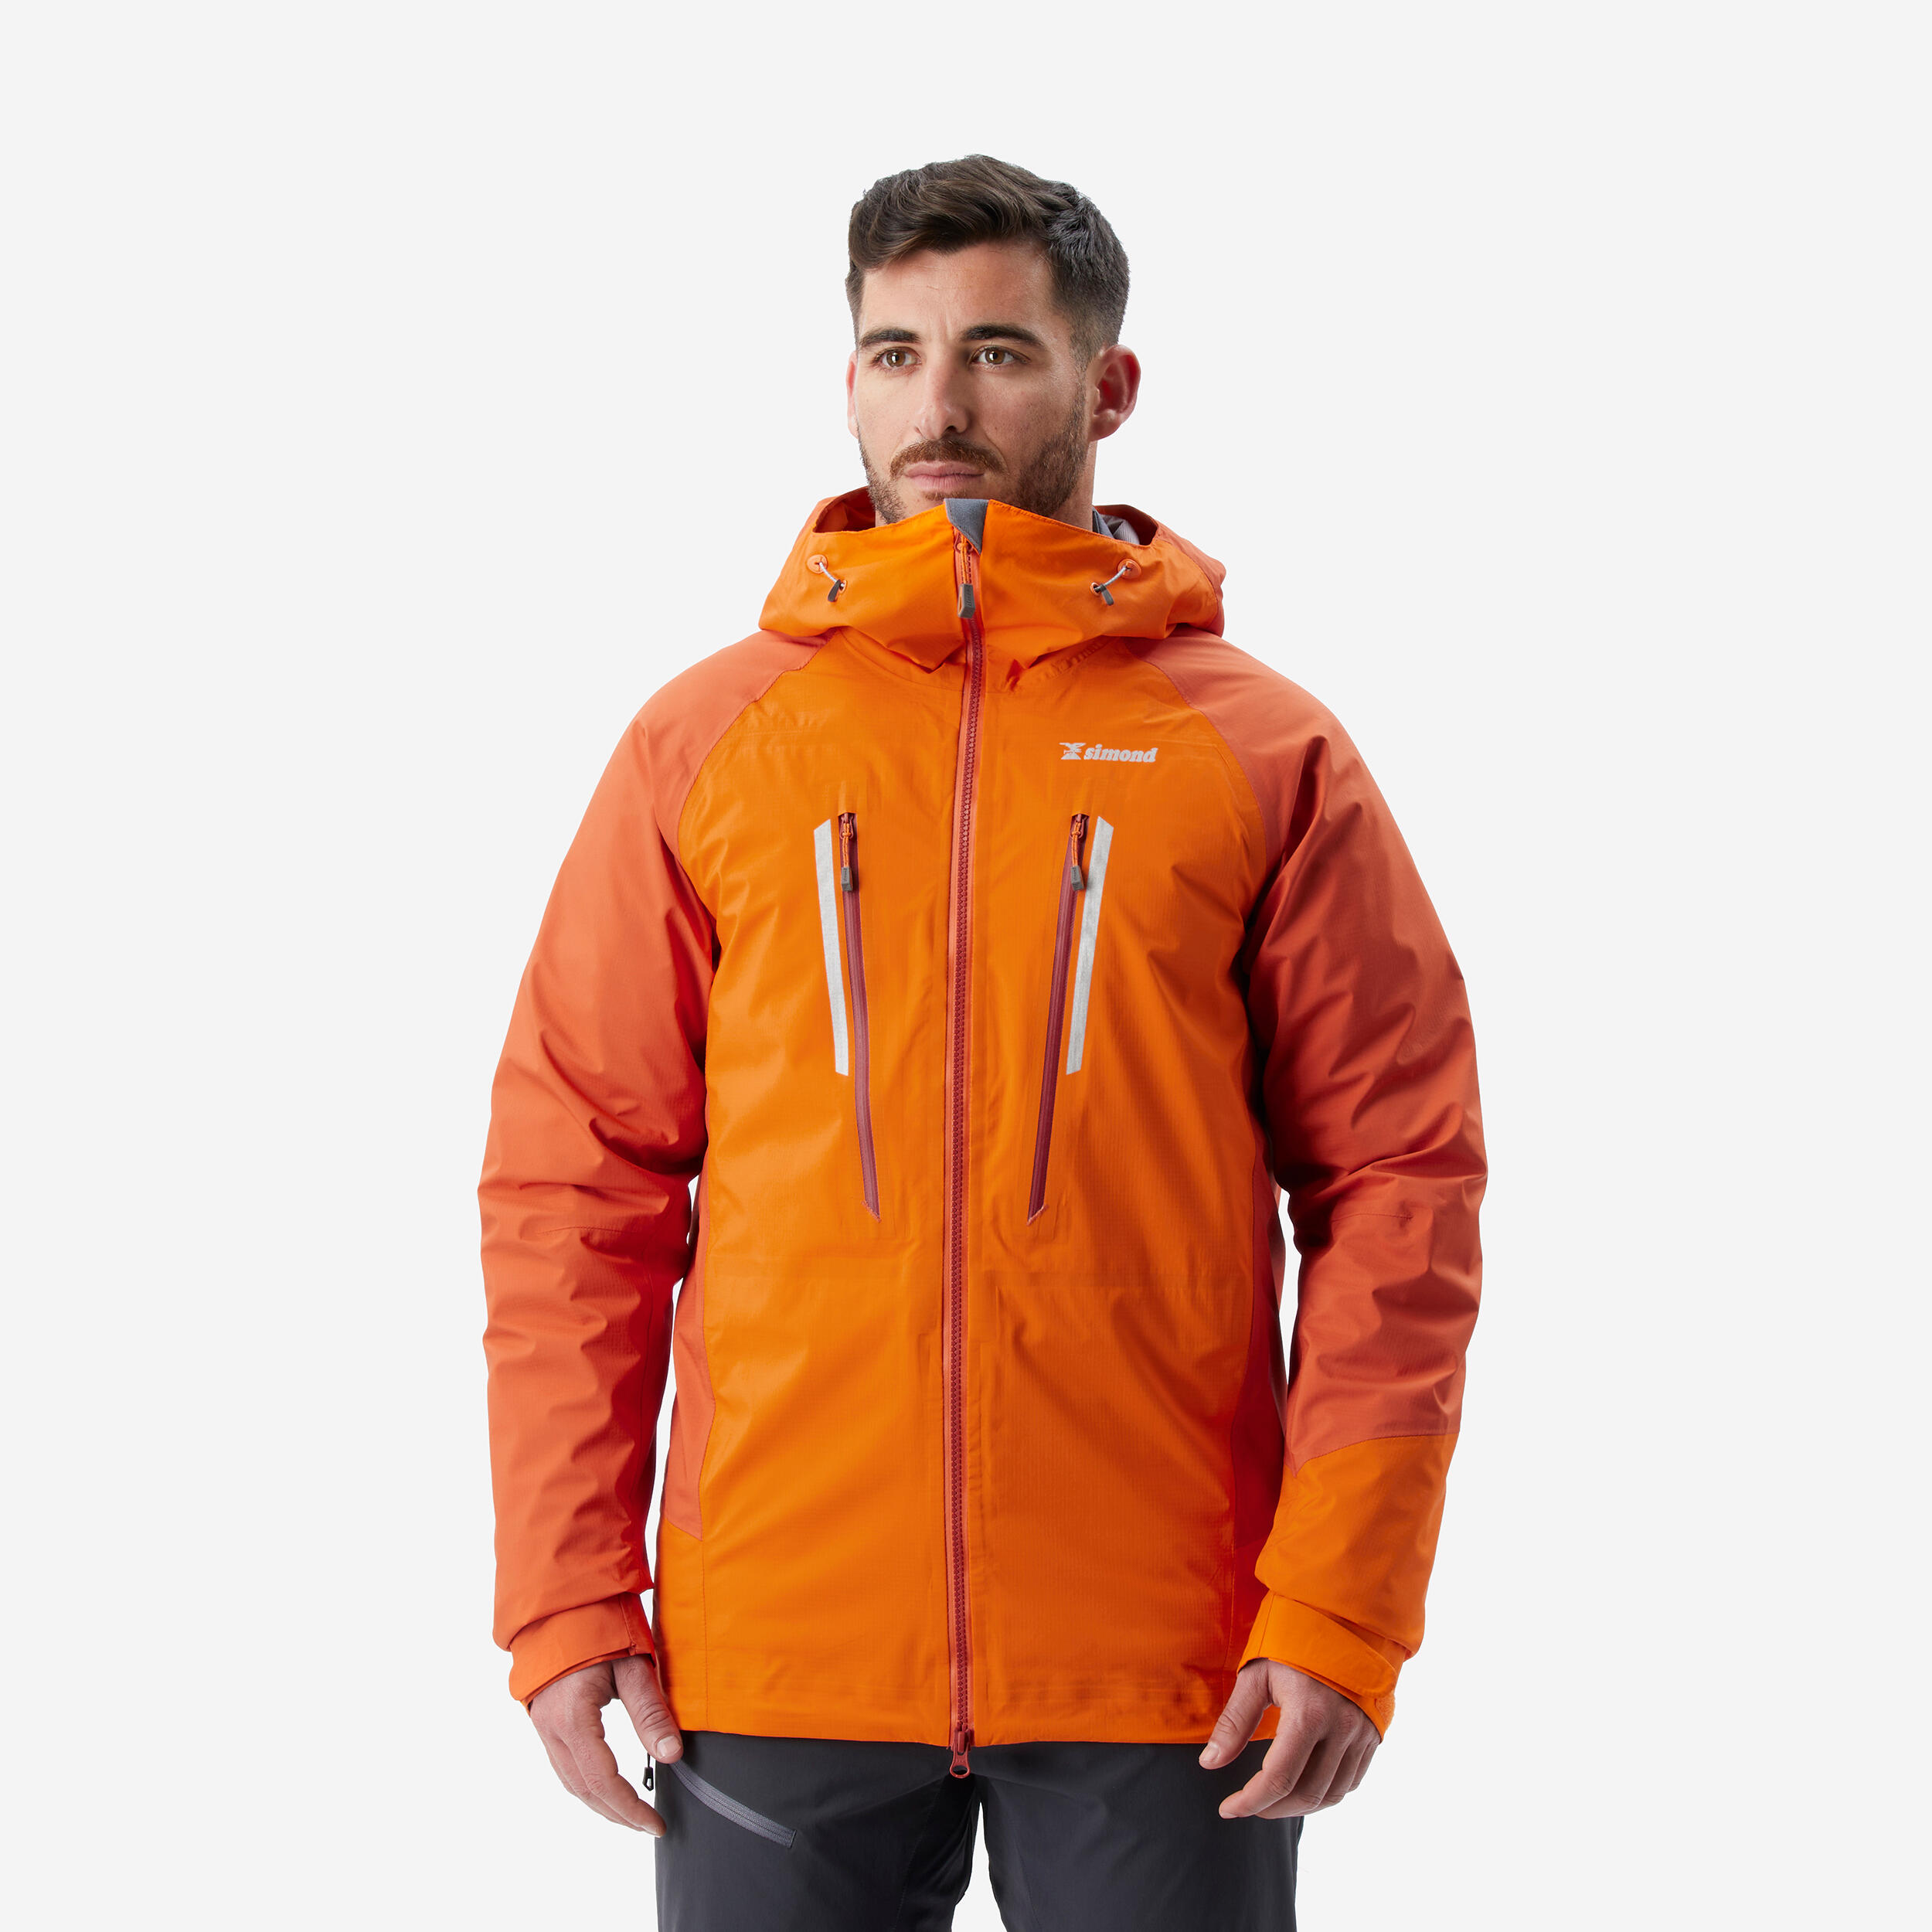 Men's Mountaineering Waterproof Jacket - Alpinism Light Orange 1/7